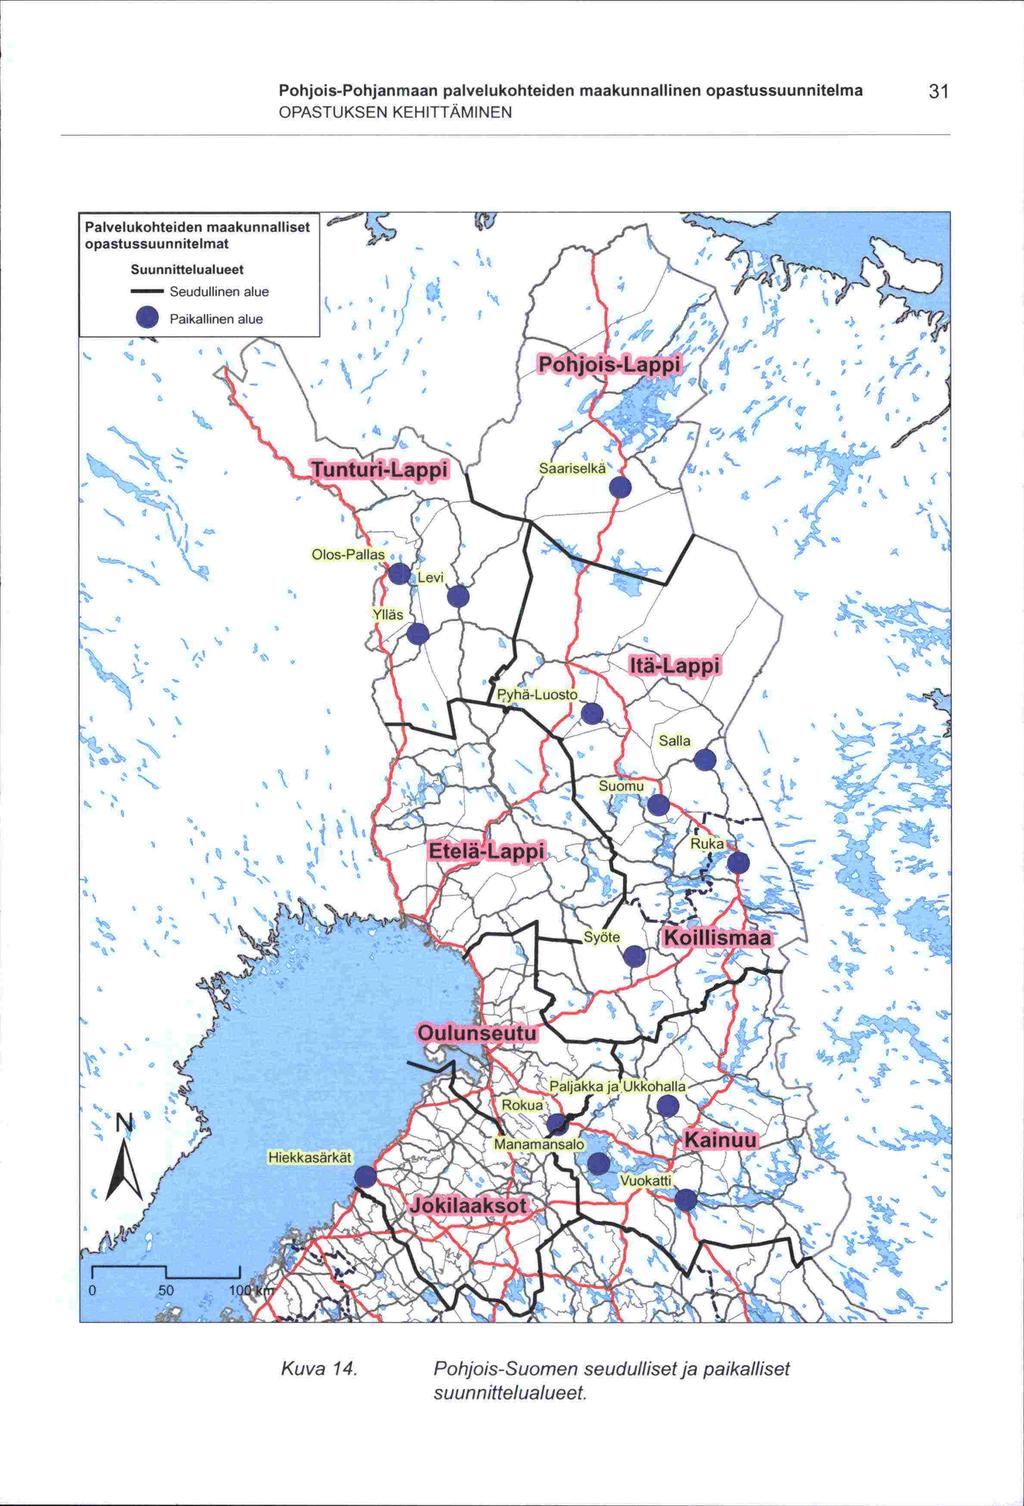 Pohjois-Pohjanmaan palvelukohteiden maakunnallinen opastussuunnitelma 31 OPASTUKSEN KEHITTÄMINEN Palvelukohteiden maakunnalliset opastussuunnitelmat Suunnittelualueet - Seudullinen alue f Paikallinen